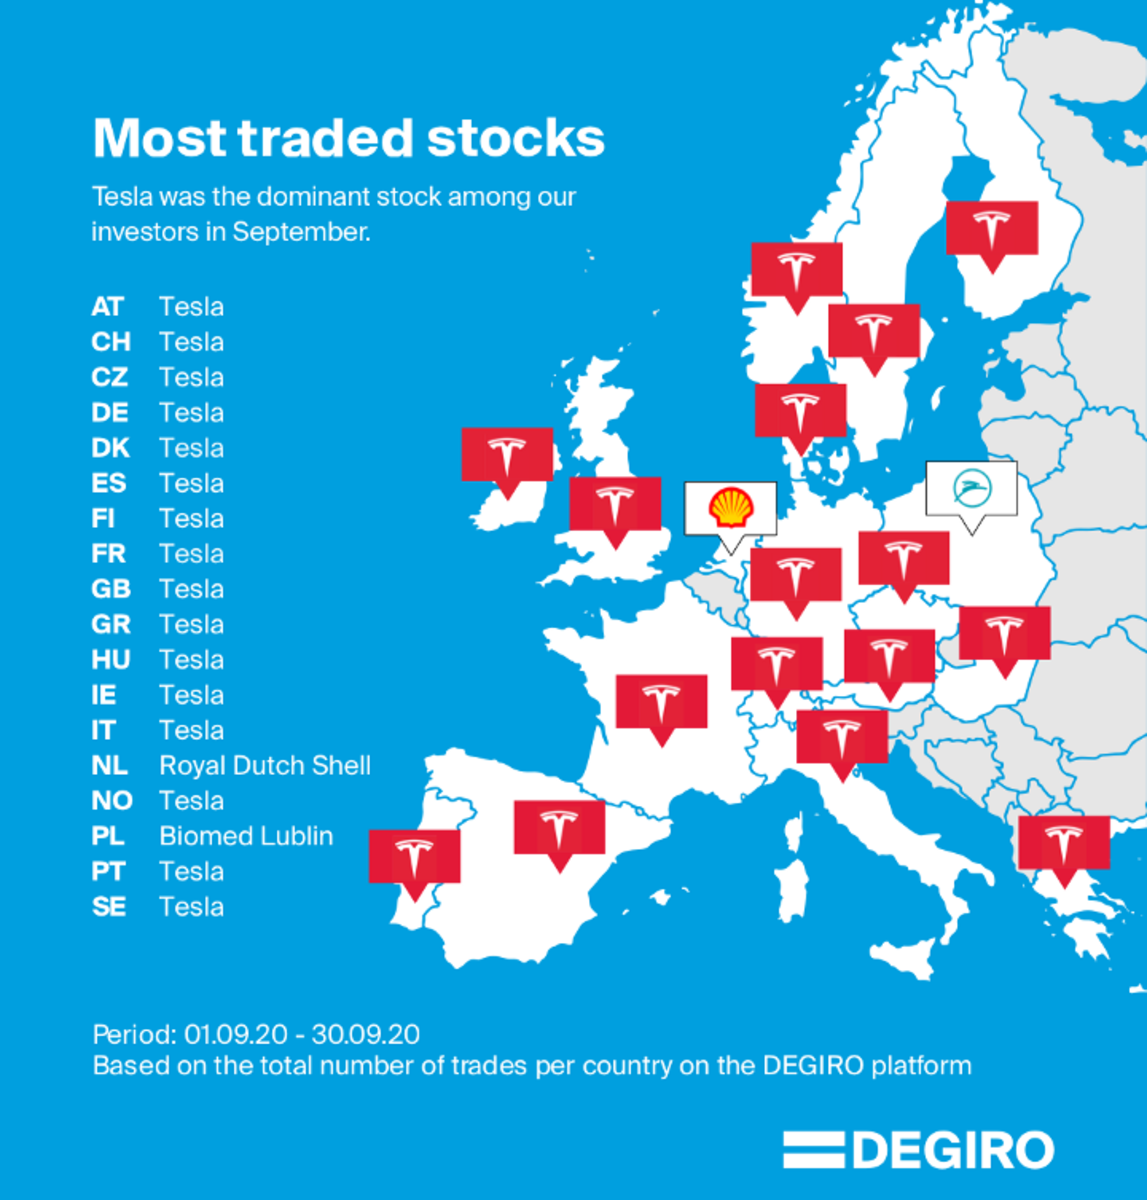 European Stock Broker Degiro showing record trading data for Tesla in September